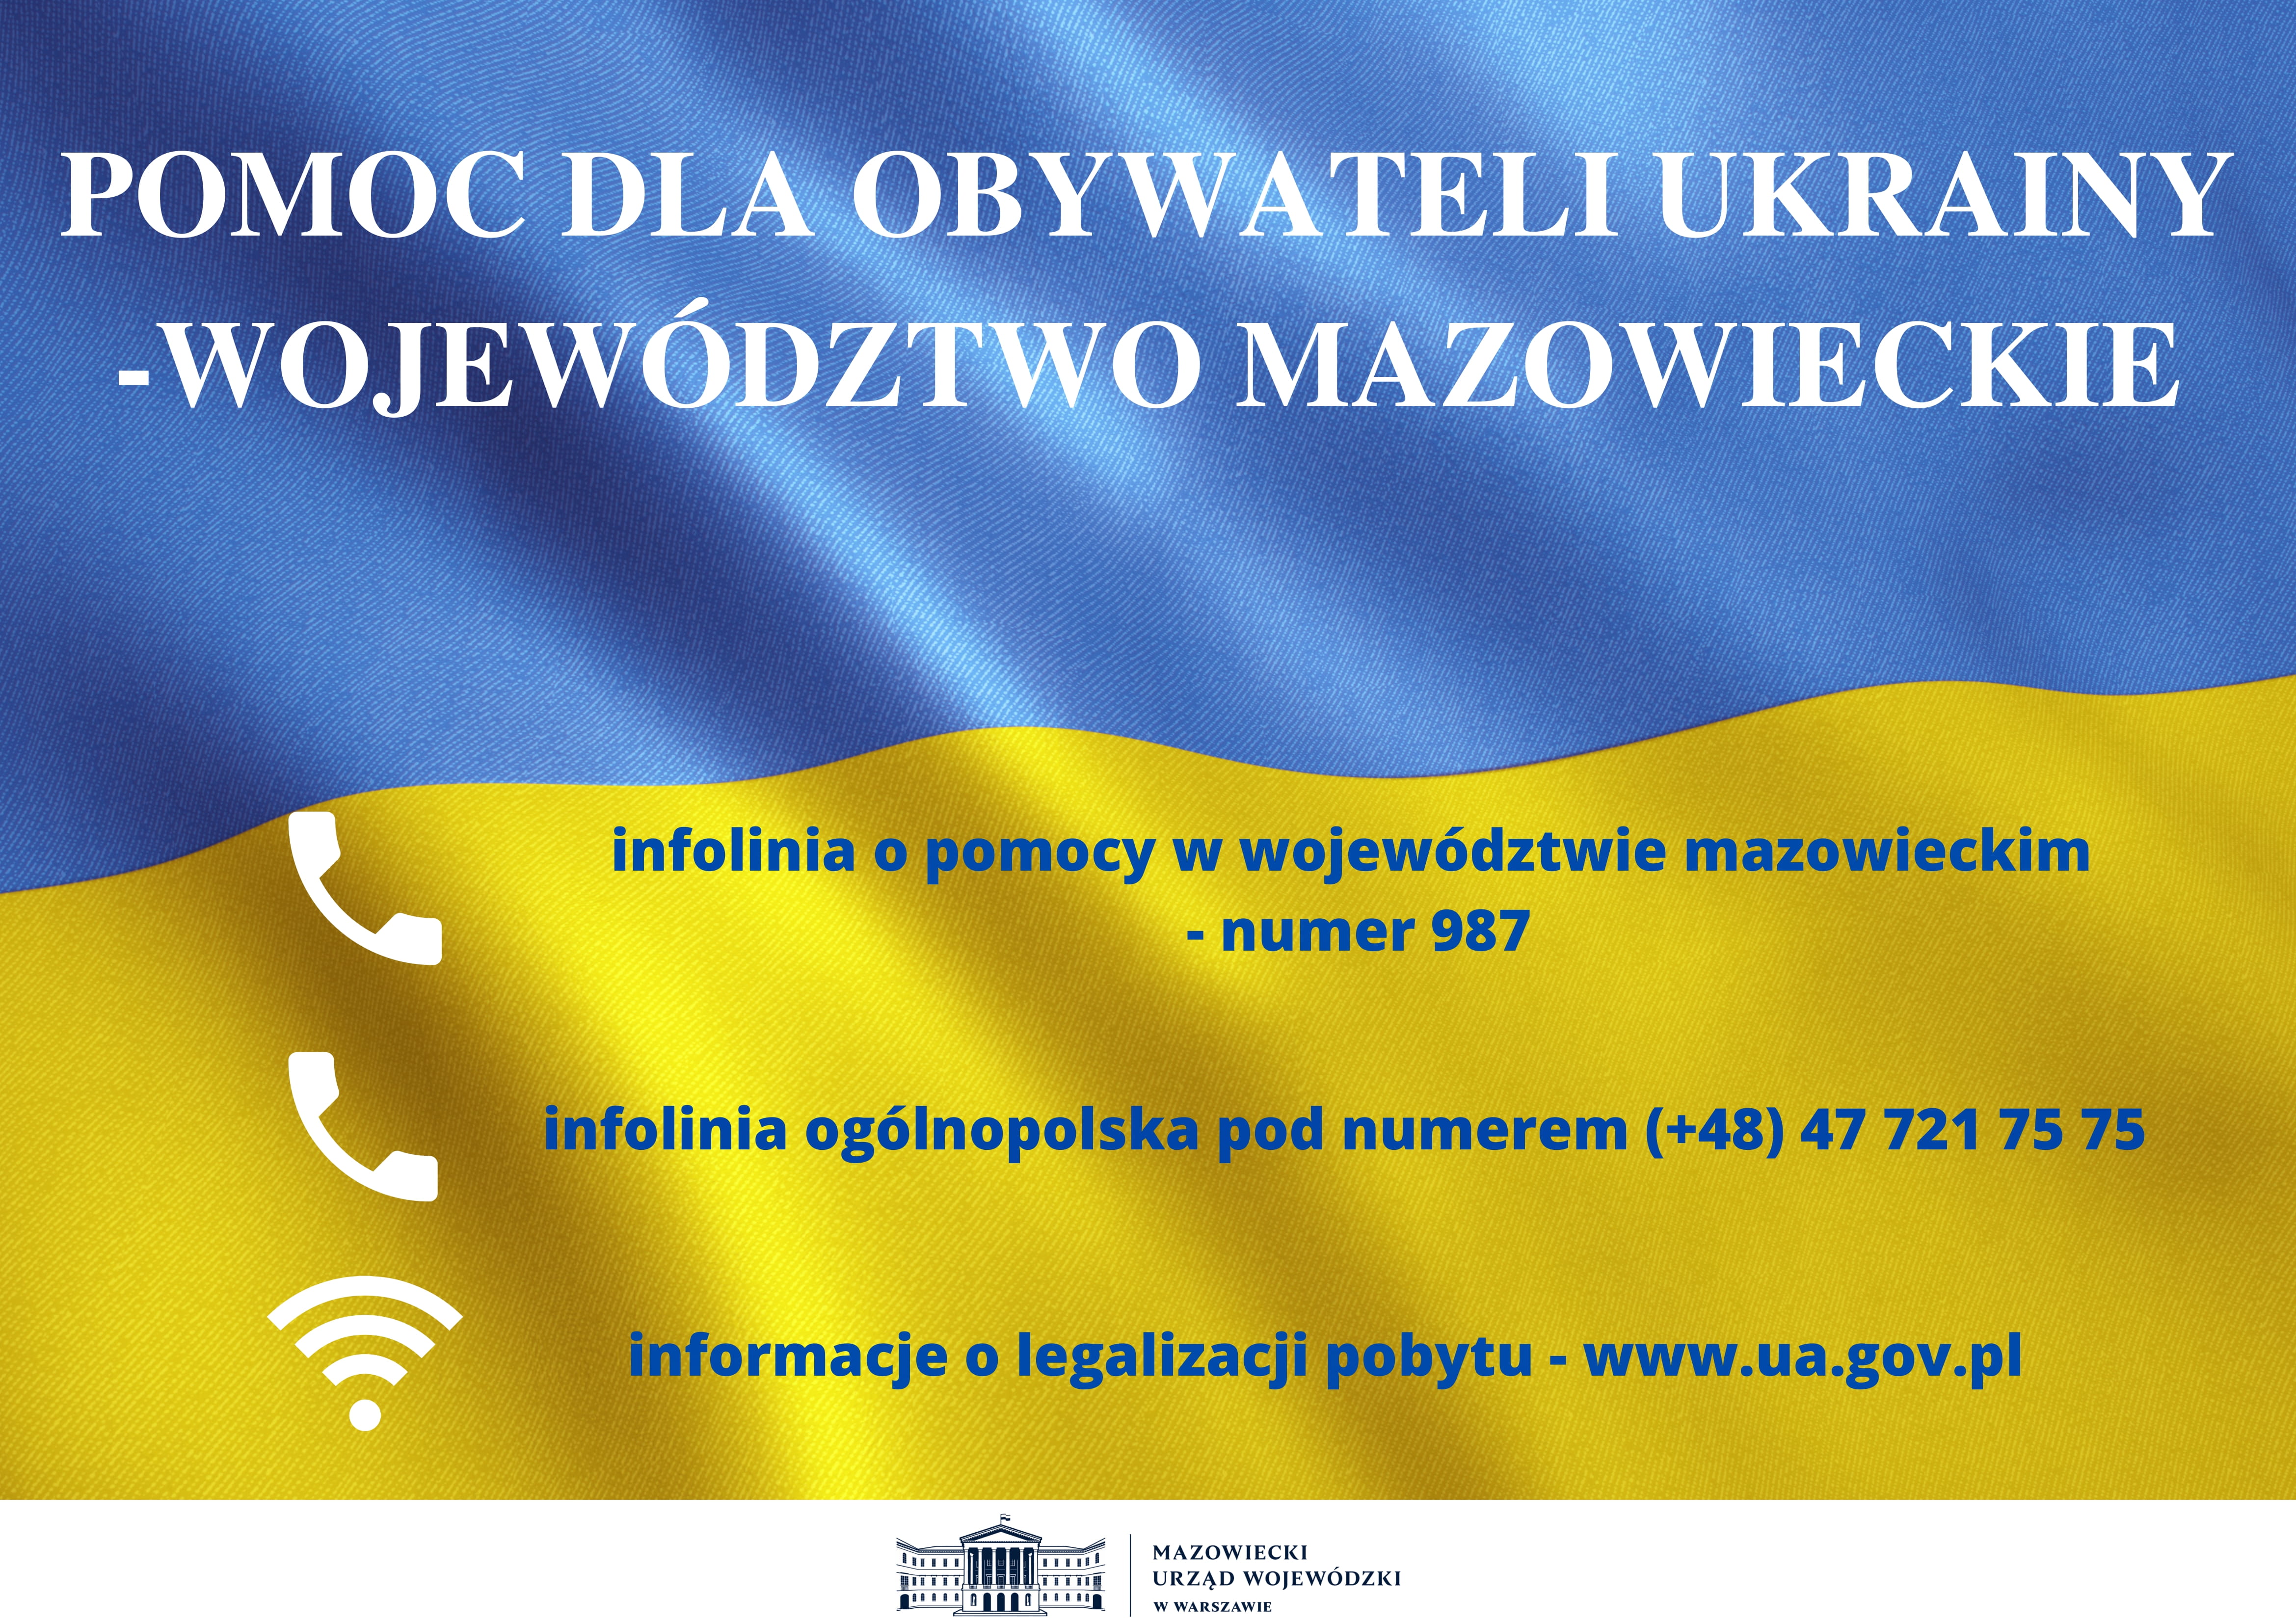 Pomoc dla obywateli Ukrainy ulotka w języku polskim